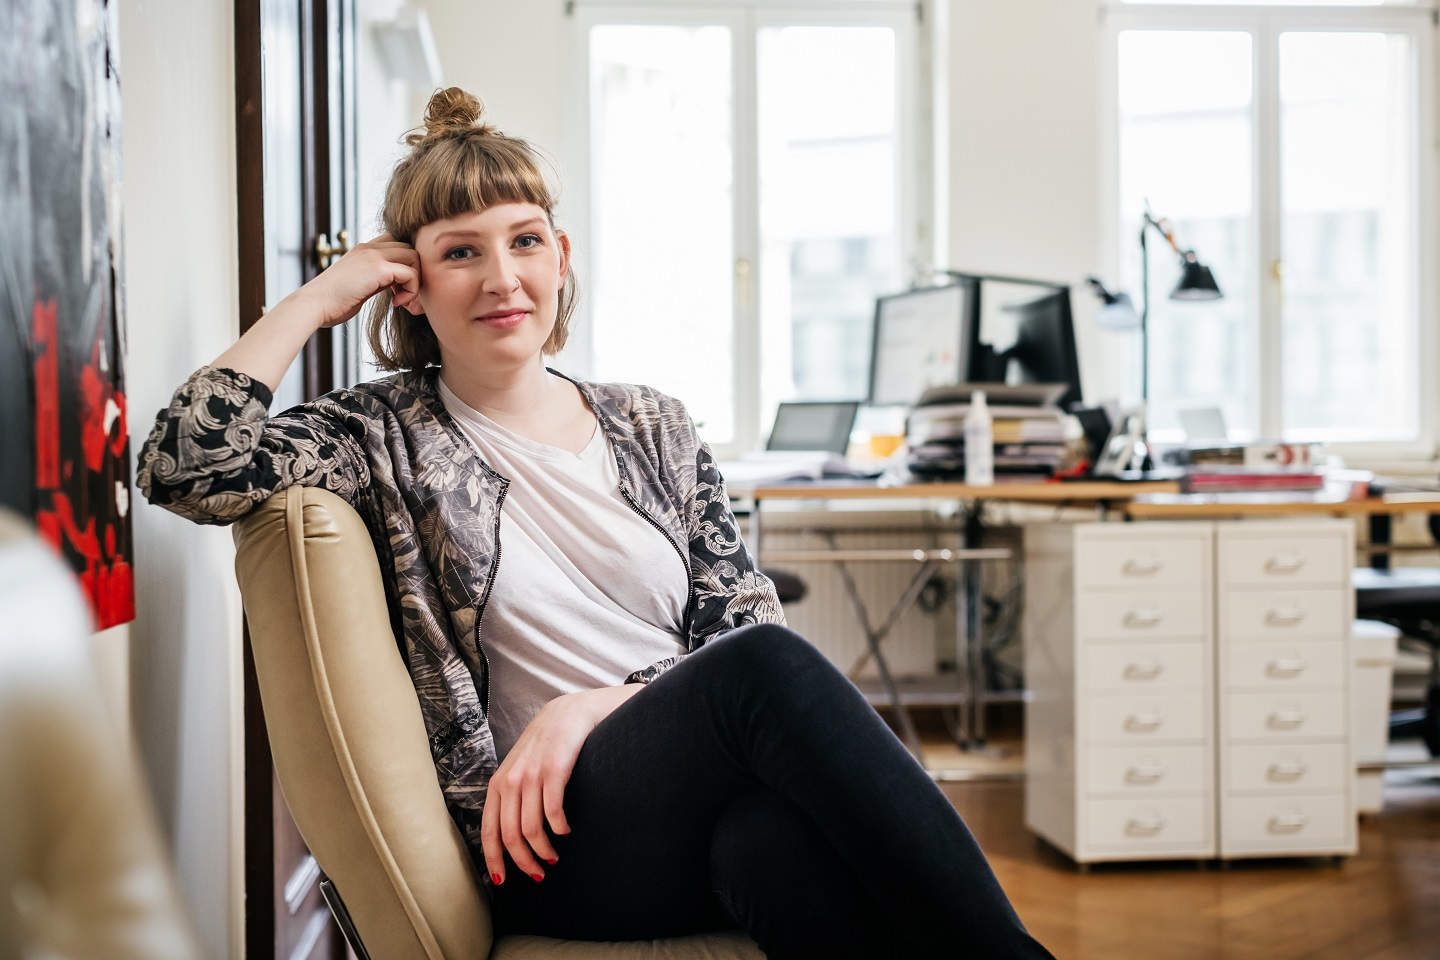 Porträt einer jungen, lässigen Start-up-Geschäftsfrau in ihrem Büro. Sie sitzt auf einem Stuhl und lächelt in die Kamera.